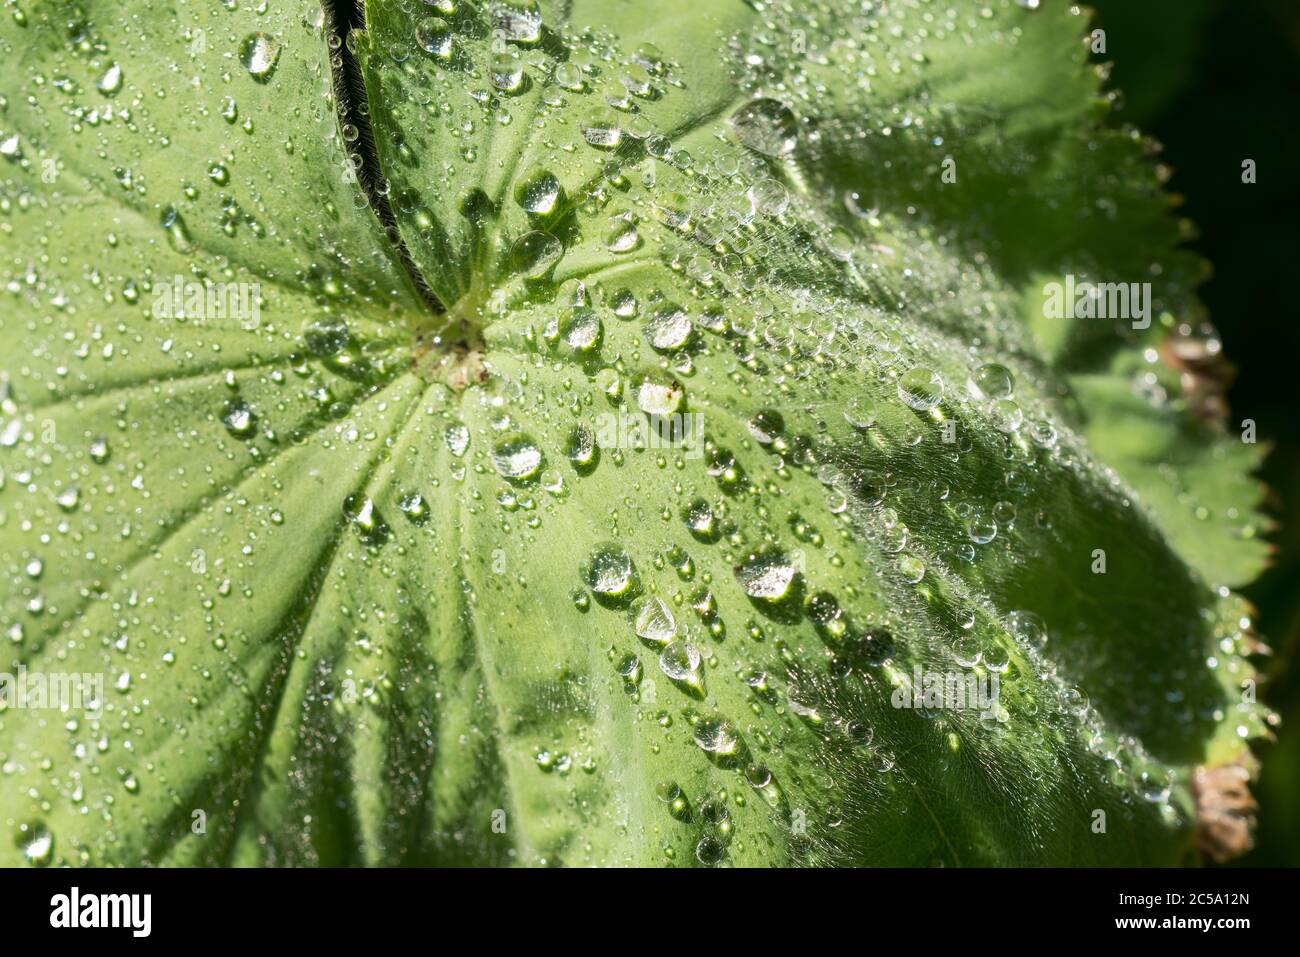 Feine hydrophile Blatthaare, die Ladys Mantel bedecken, lassen Wassertropfen nach Regen an ihnen anhaften, wegen der hydrophoben Eigenschaften Stockfoto